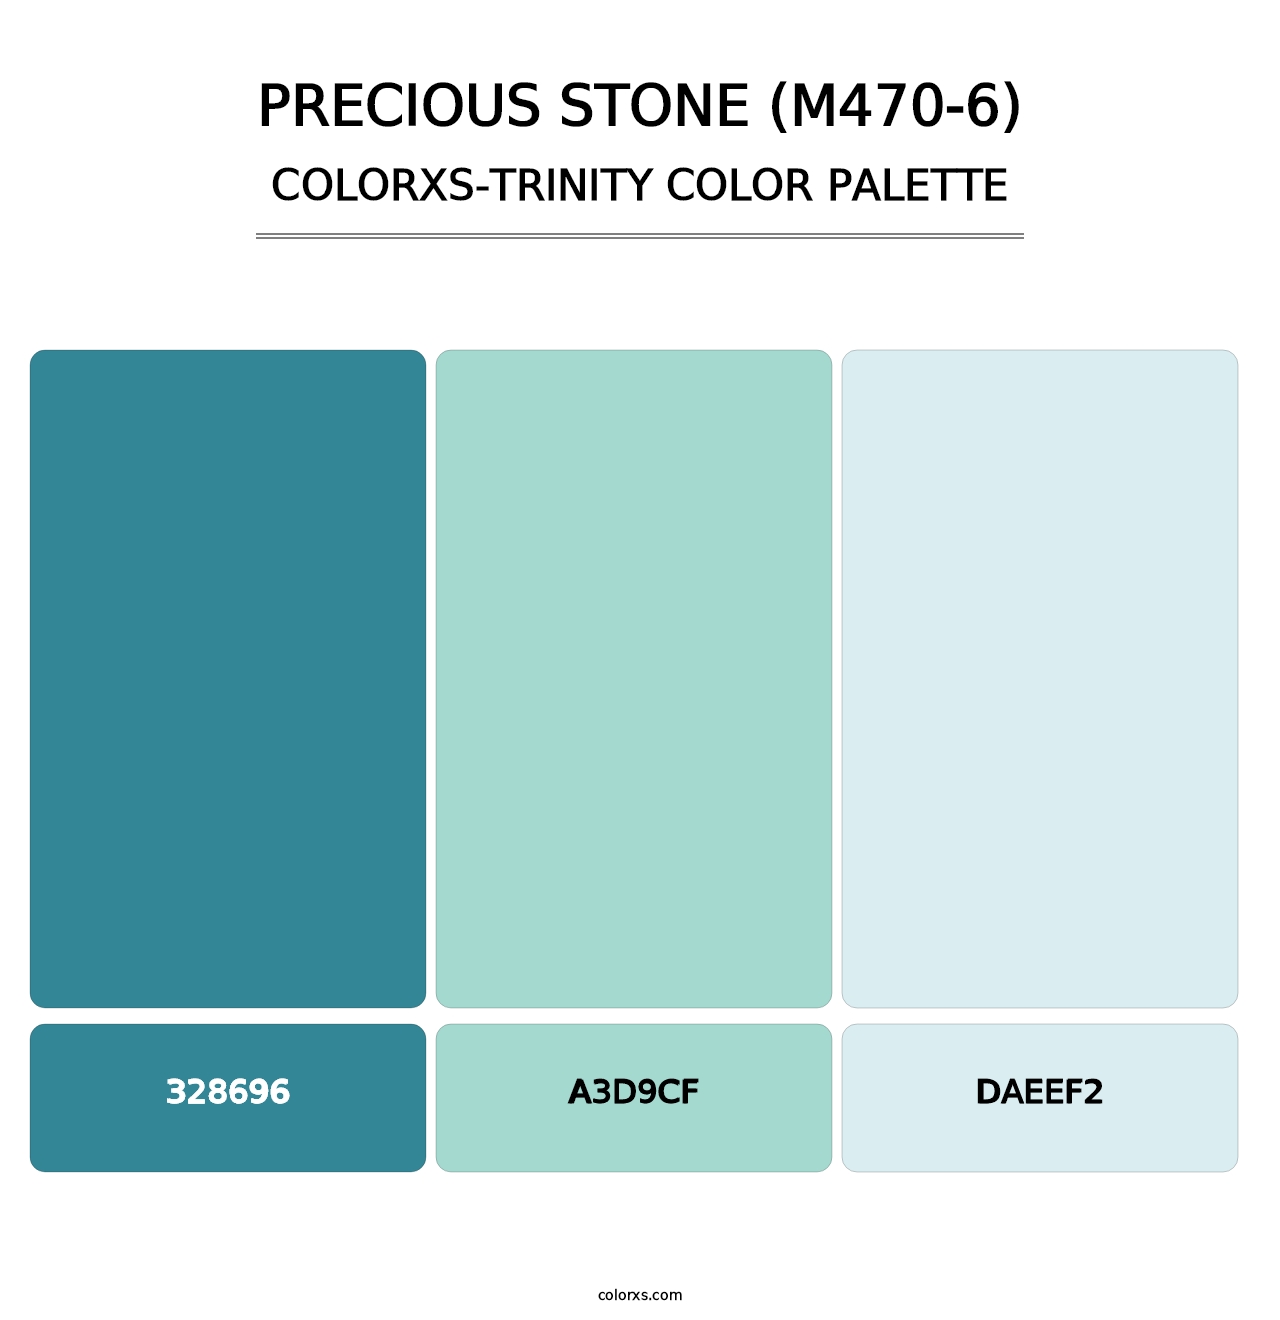 Precious Stone (M470-6) - Colorxs Trinity Palette